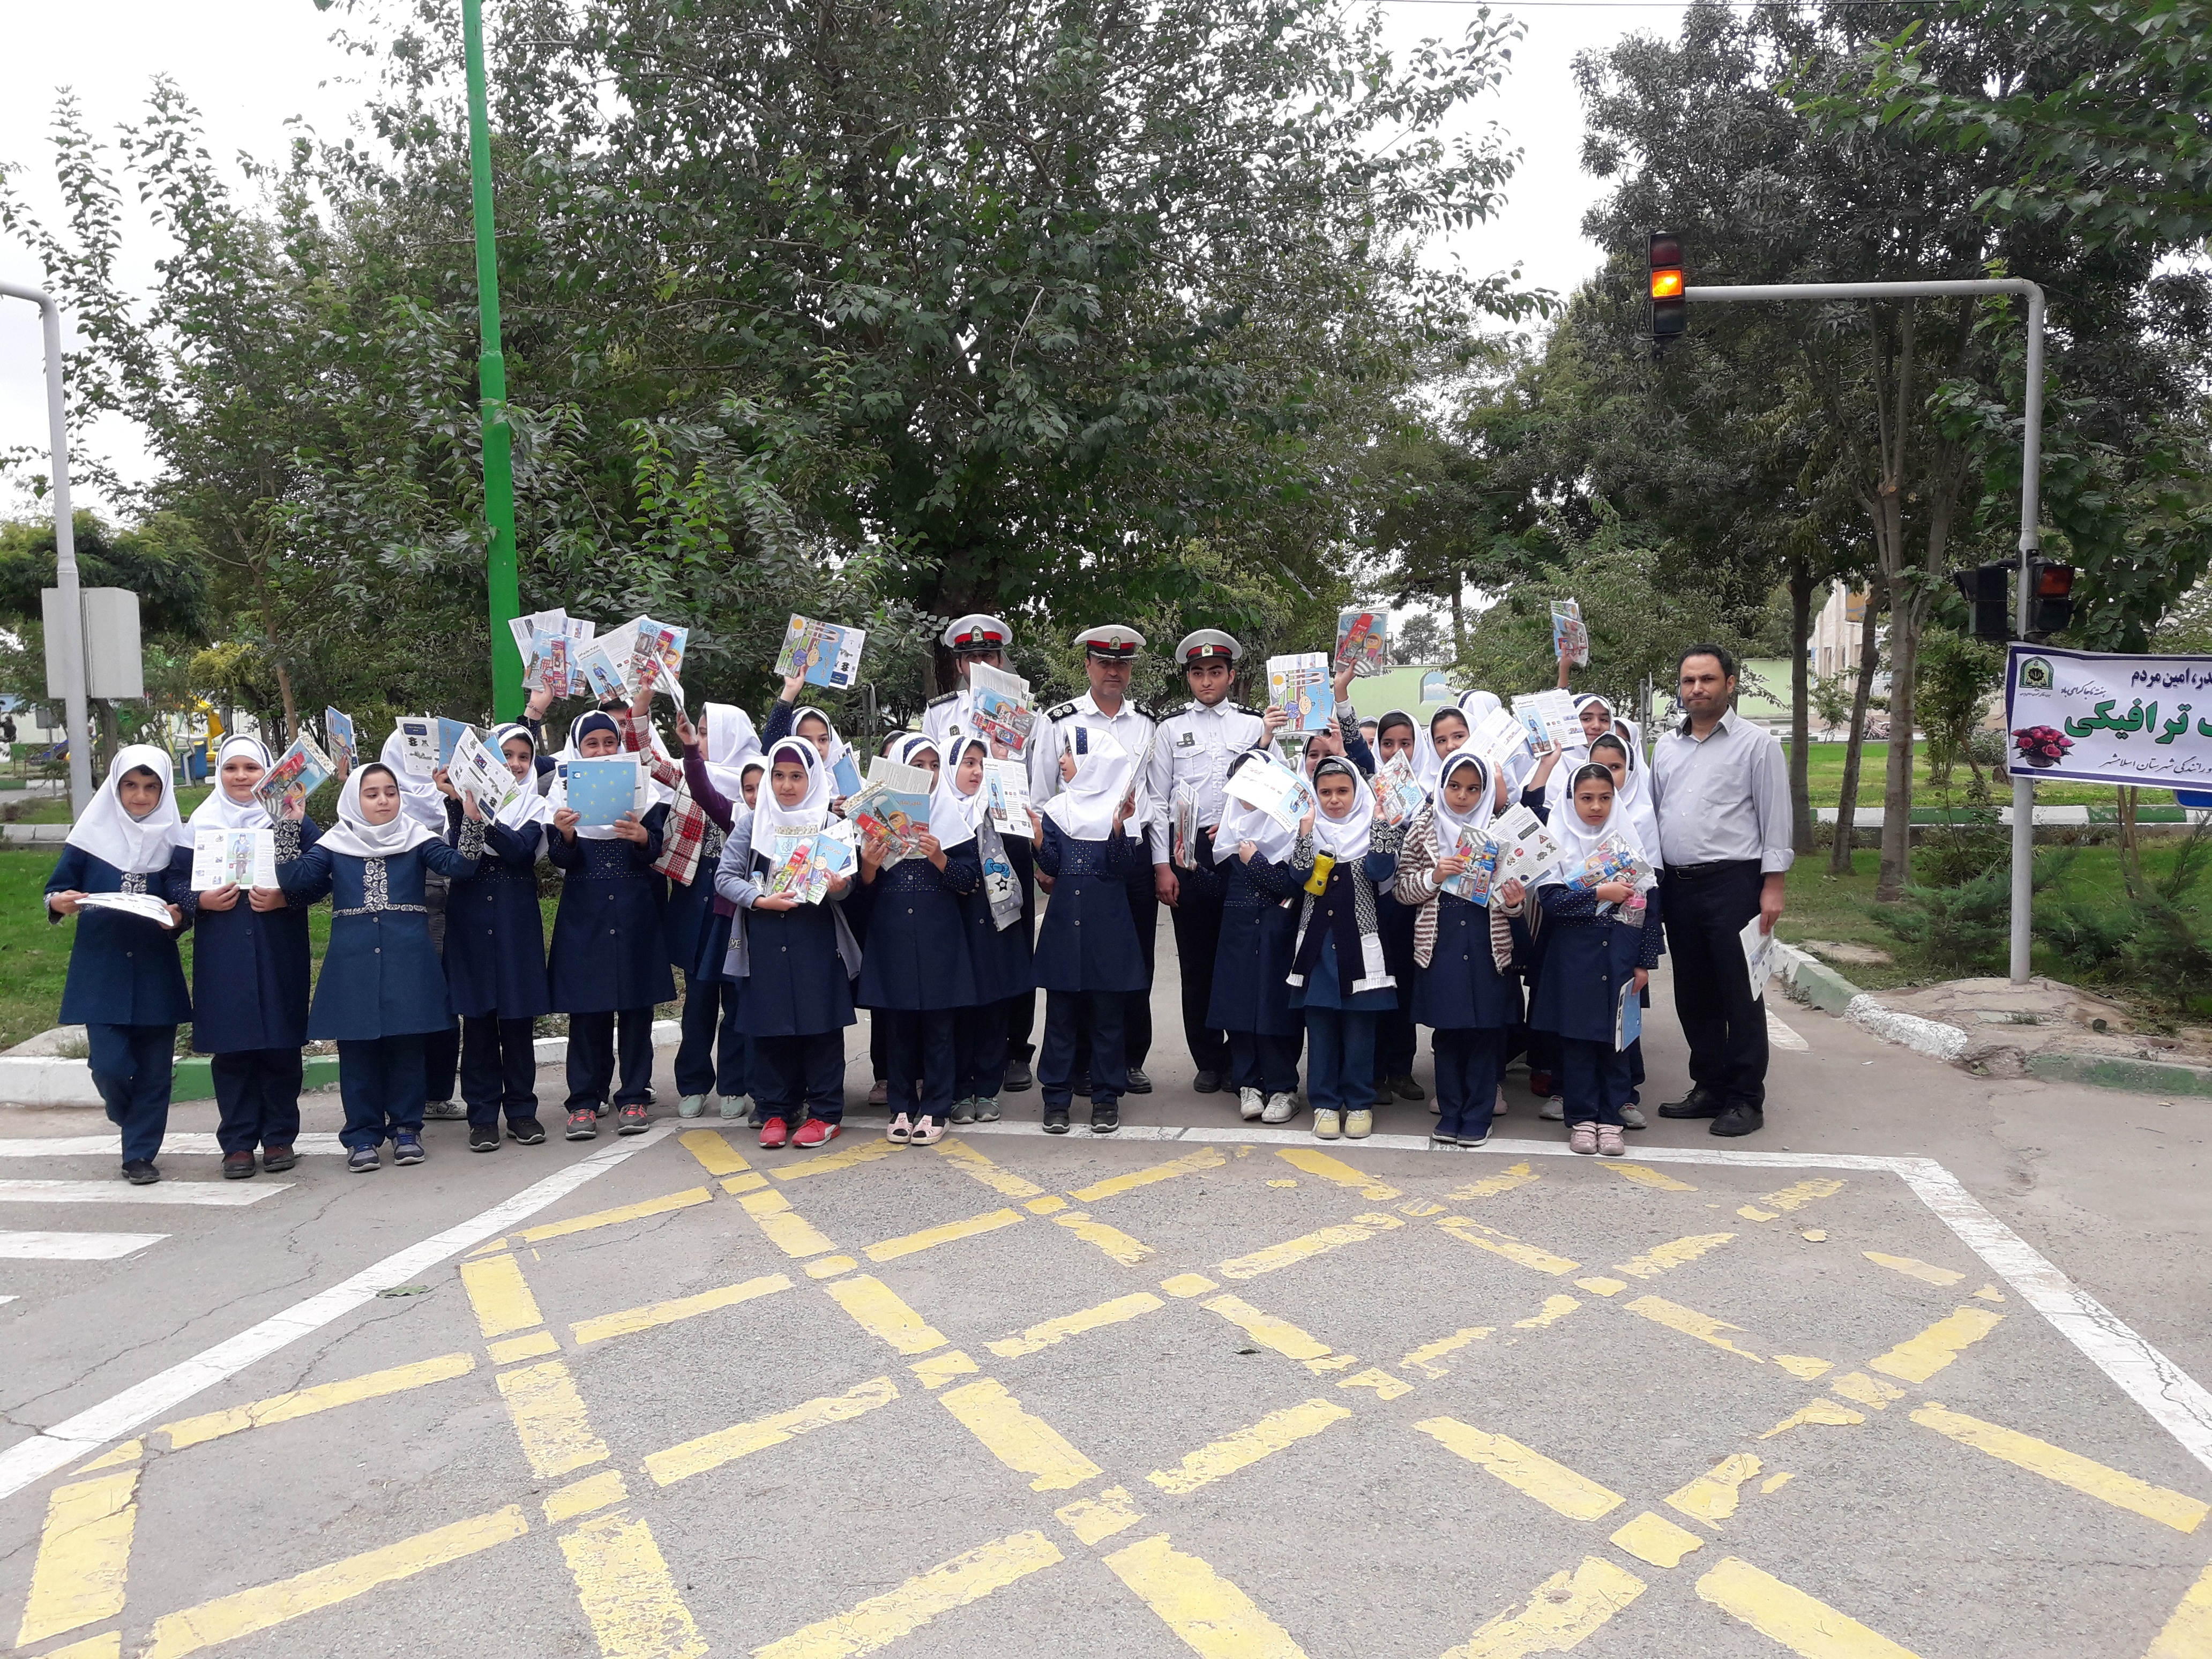 آموزش فرهنگ ترافیک به دانش آموزان دبستان دخترانه حضرت جواد الائمه (ع) در پارک ترافیک